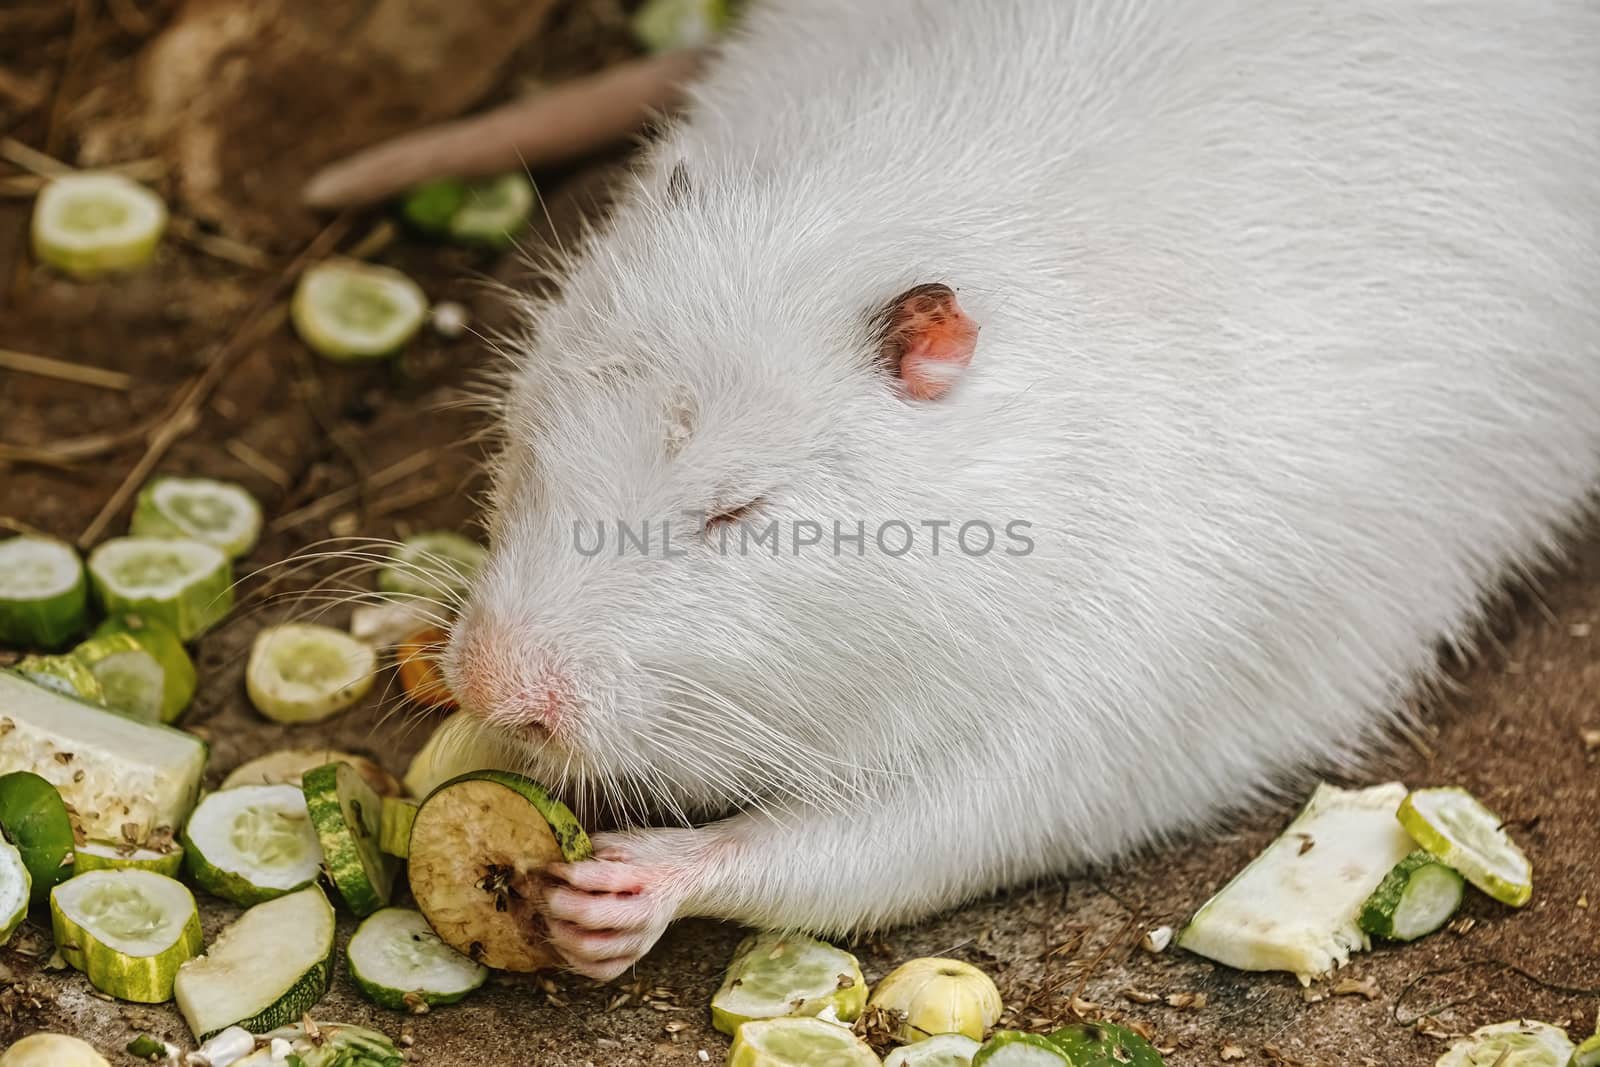 White coypu (Myocastor coypus) eating vegetables